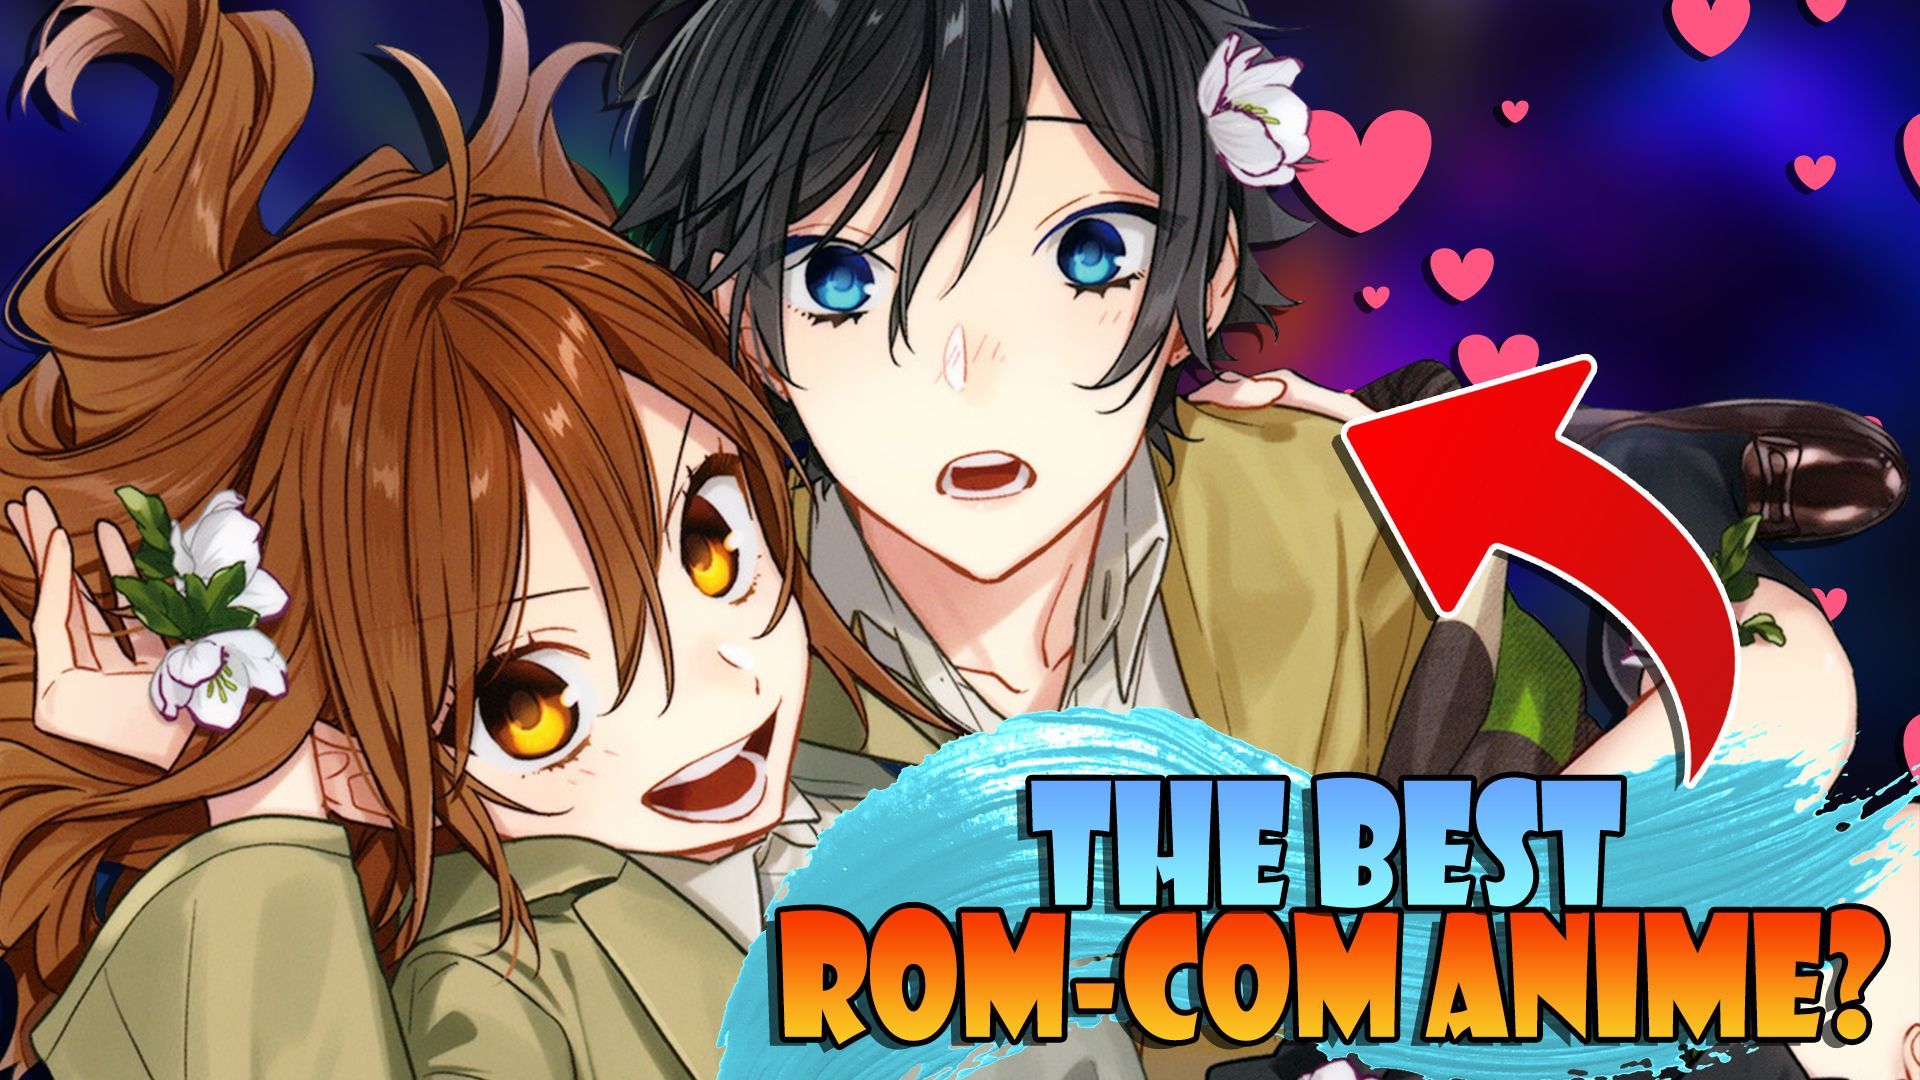 Share 148+ best romcom anime best - 3tdesign.edu.vn